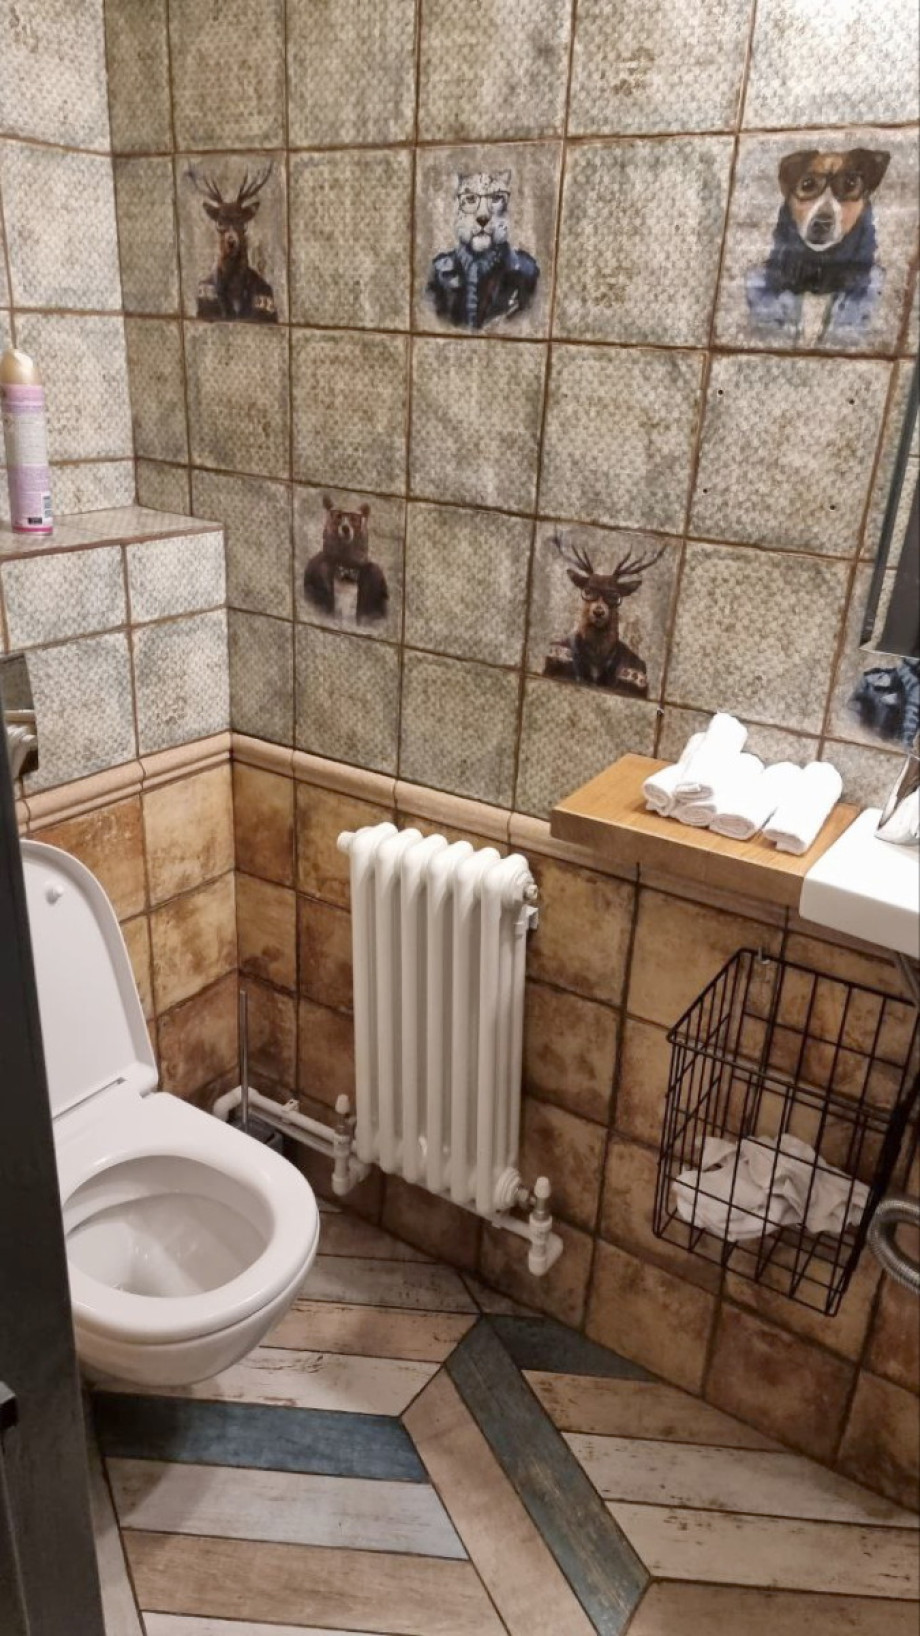 Туалет с животными в гастробаре Острог. Изображение 2